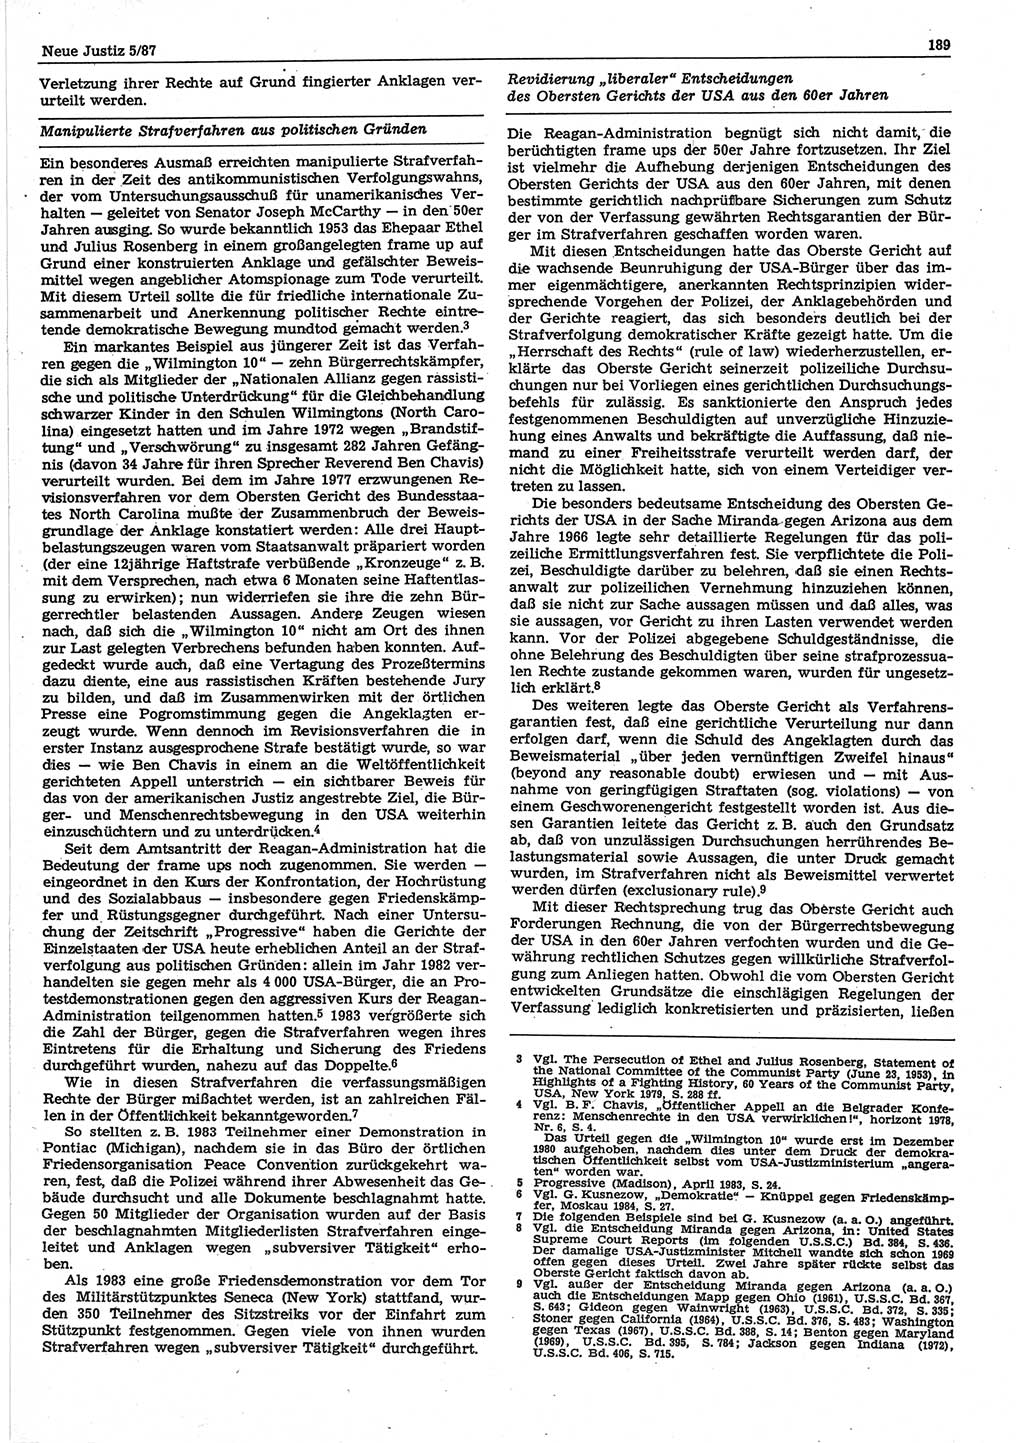 Neue Justiz (NJ), Zeitschrift für sozialistisches Recht und Gesetzlichkeit [Deutsche Demokratische Republik (DDR)], 41. Jahrgang 1987, Seite 189 (NJ DDR 1987, S. 189)